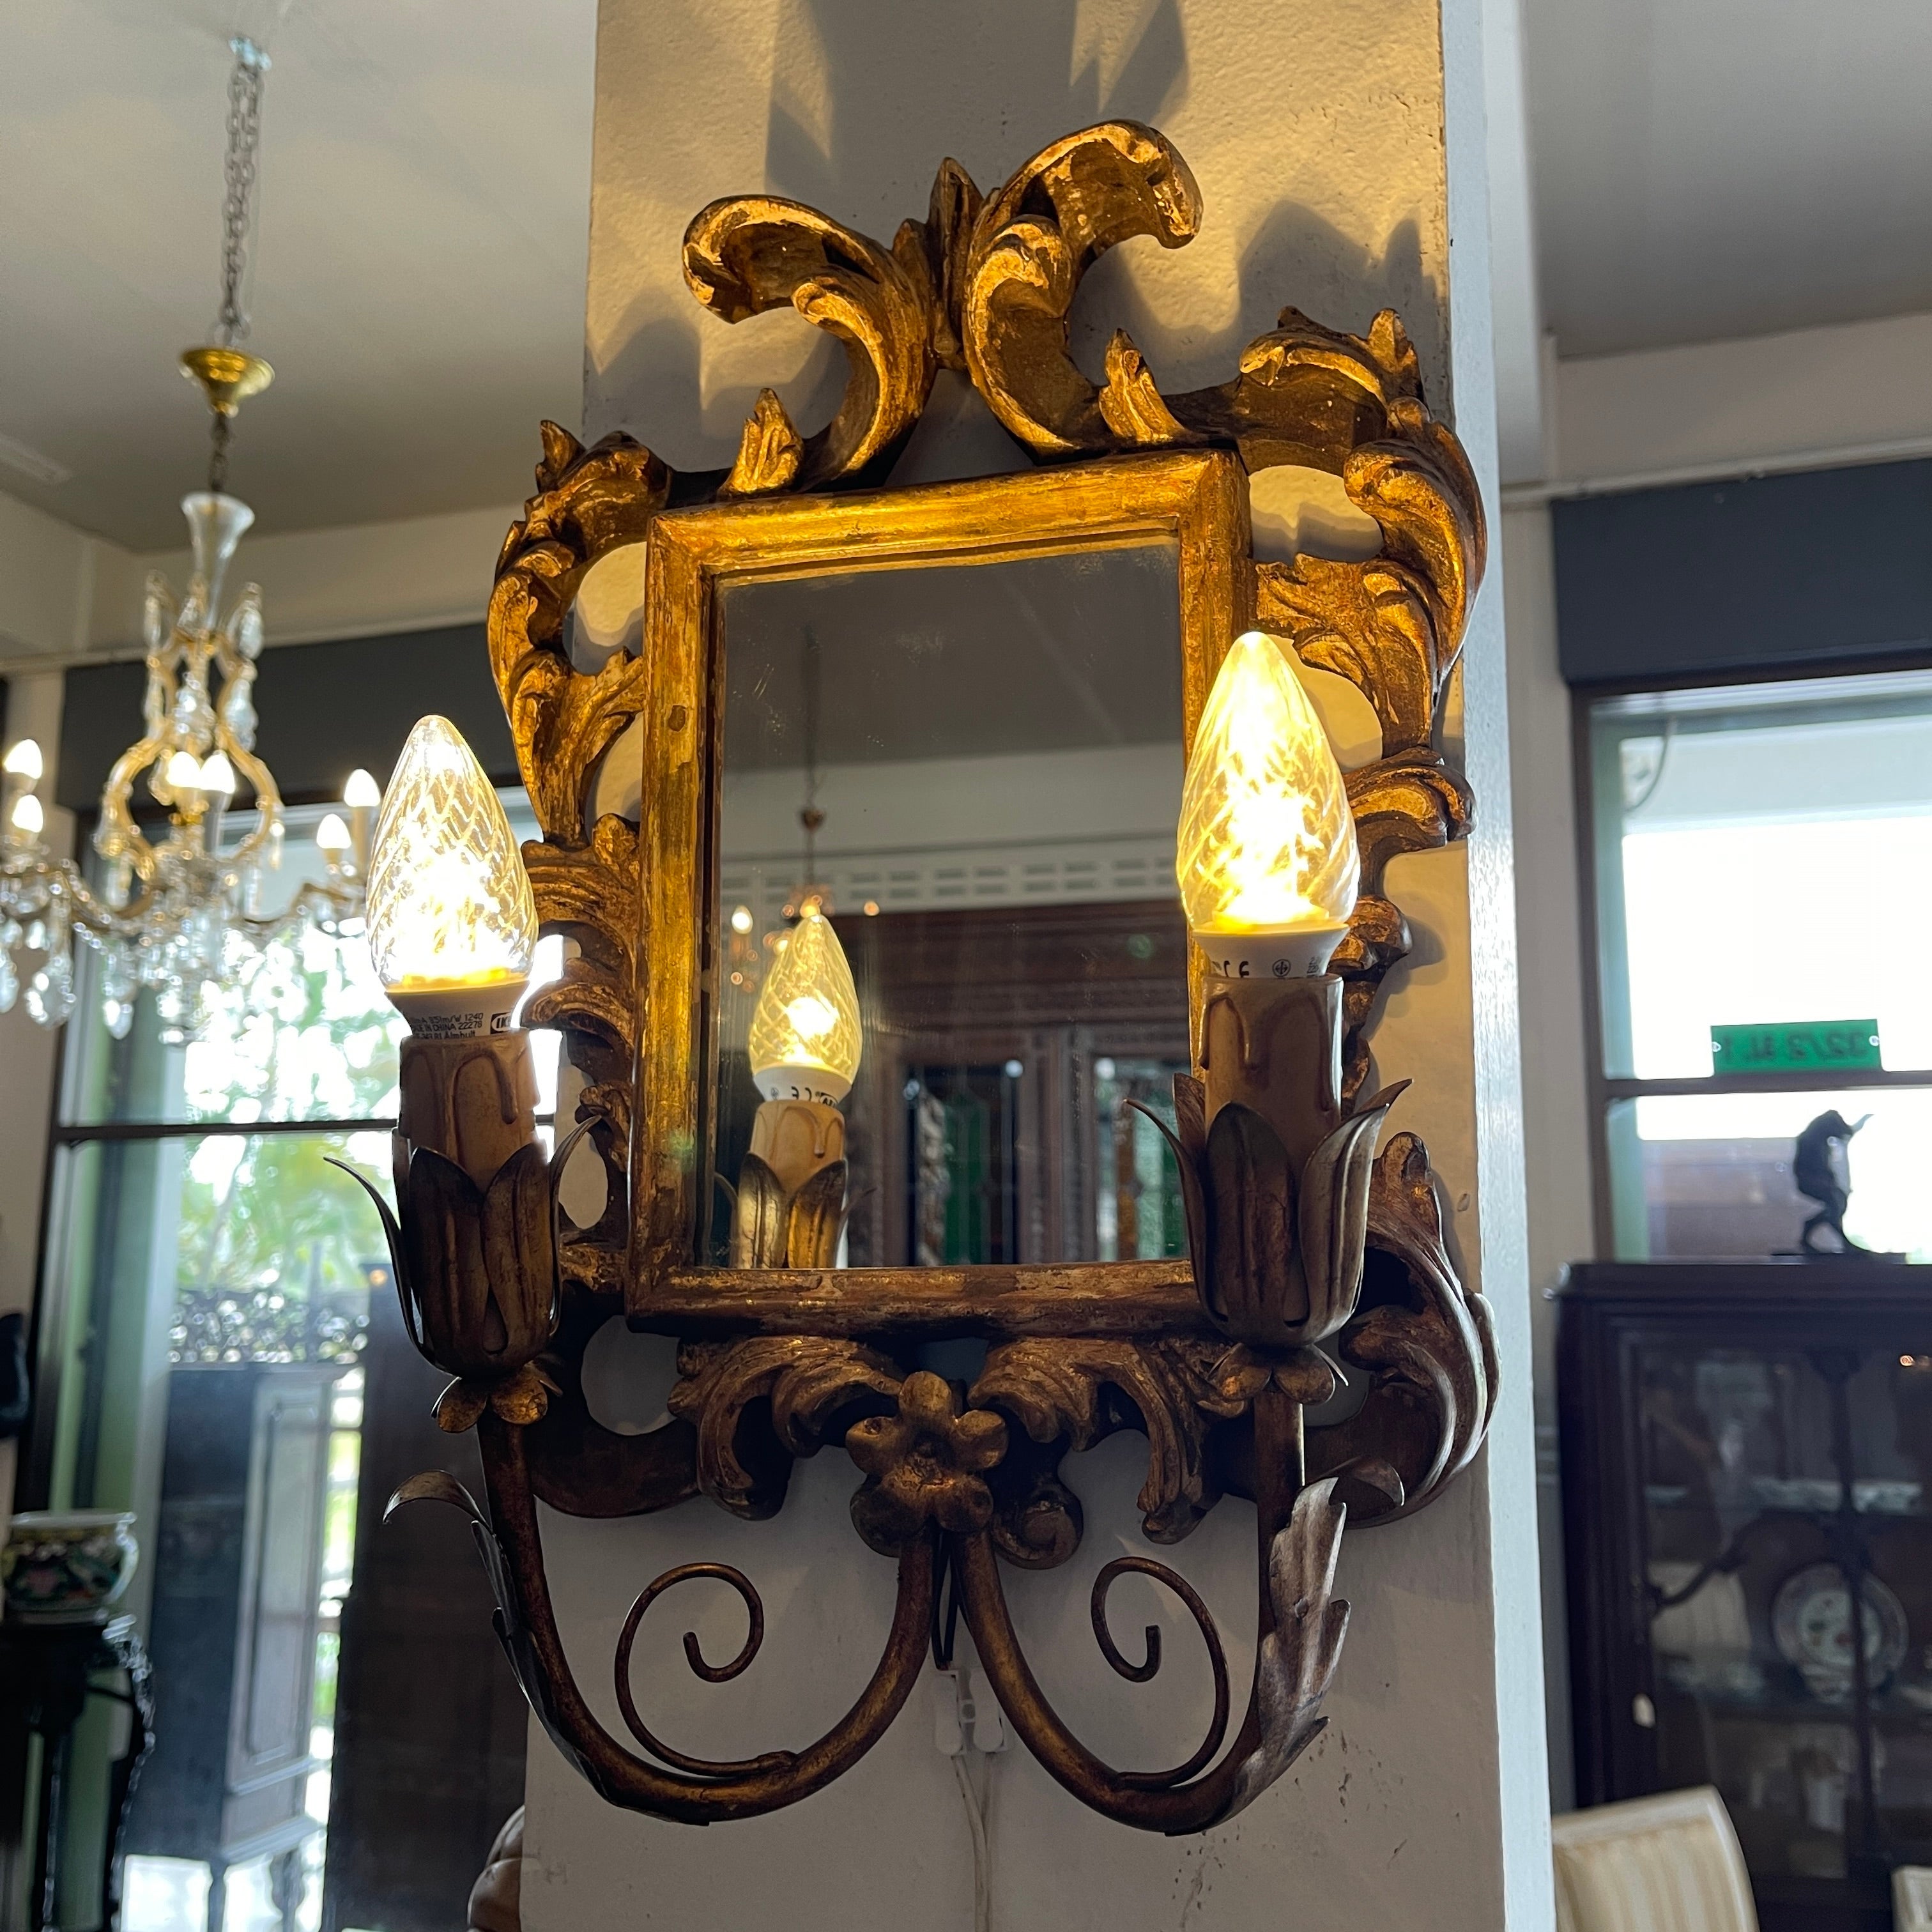 Wir präsentieren ein atemberaubendes Paar von antiken europäischen vergoldeten Spiegeln aus dem 19. Diese exquisiten Wandleuchter sind der Inbegriff der Handwerkskunst des 19. Jahrhunderts mit ihren kunstvoll geschnitzten Rahmen aus Goldholz, die